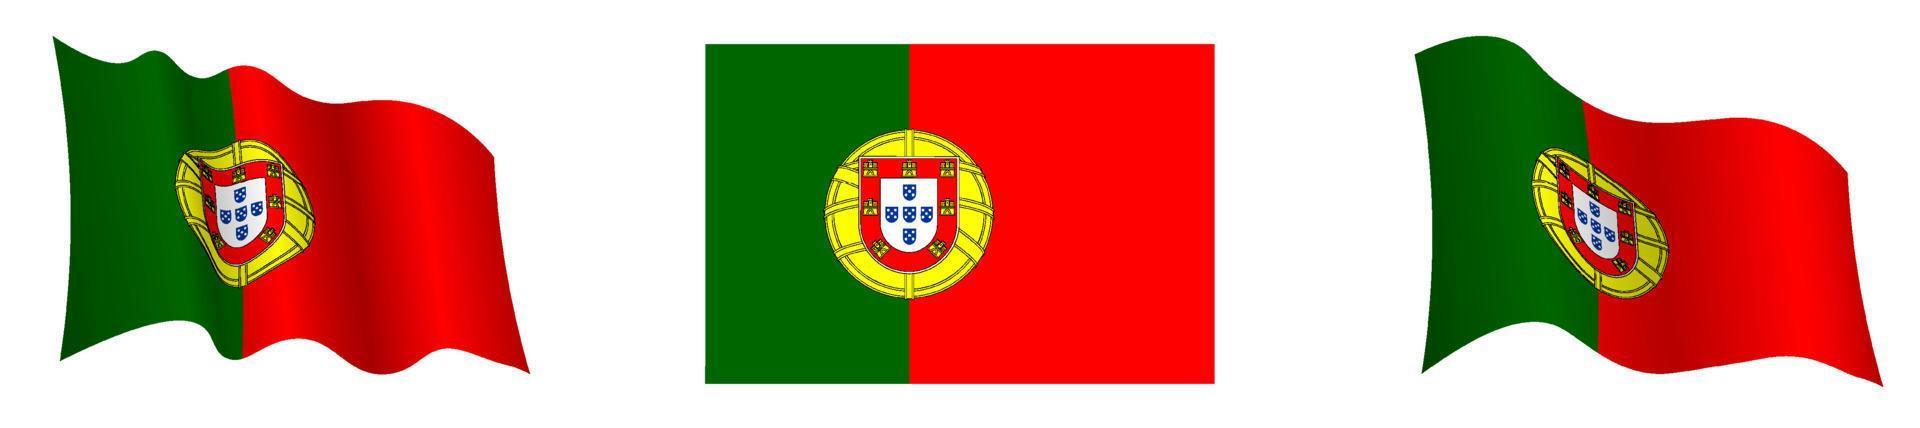 drapeau du portugal en position statique et en mouvement, se développant au vent dans des couleurs et des tailles exactes, sur fond blanc vecteur